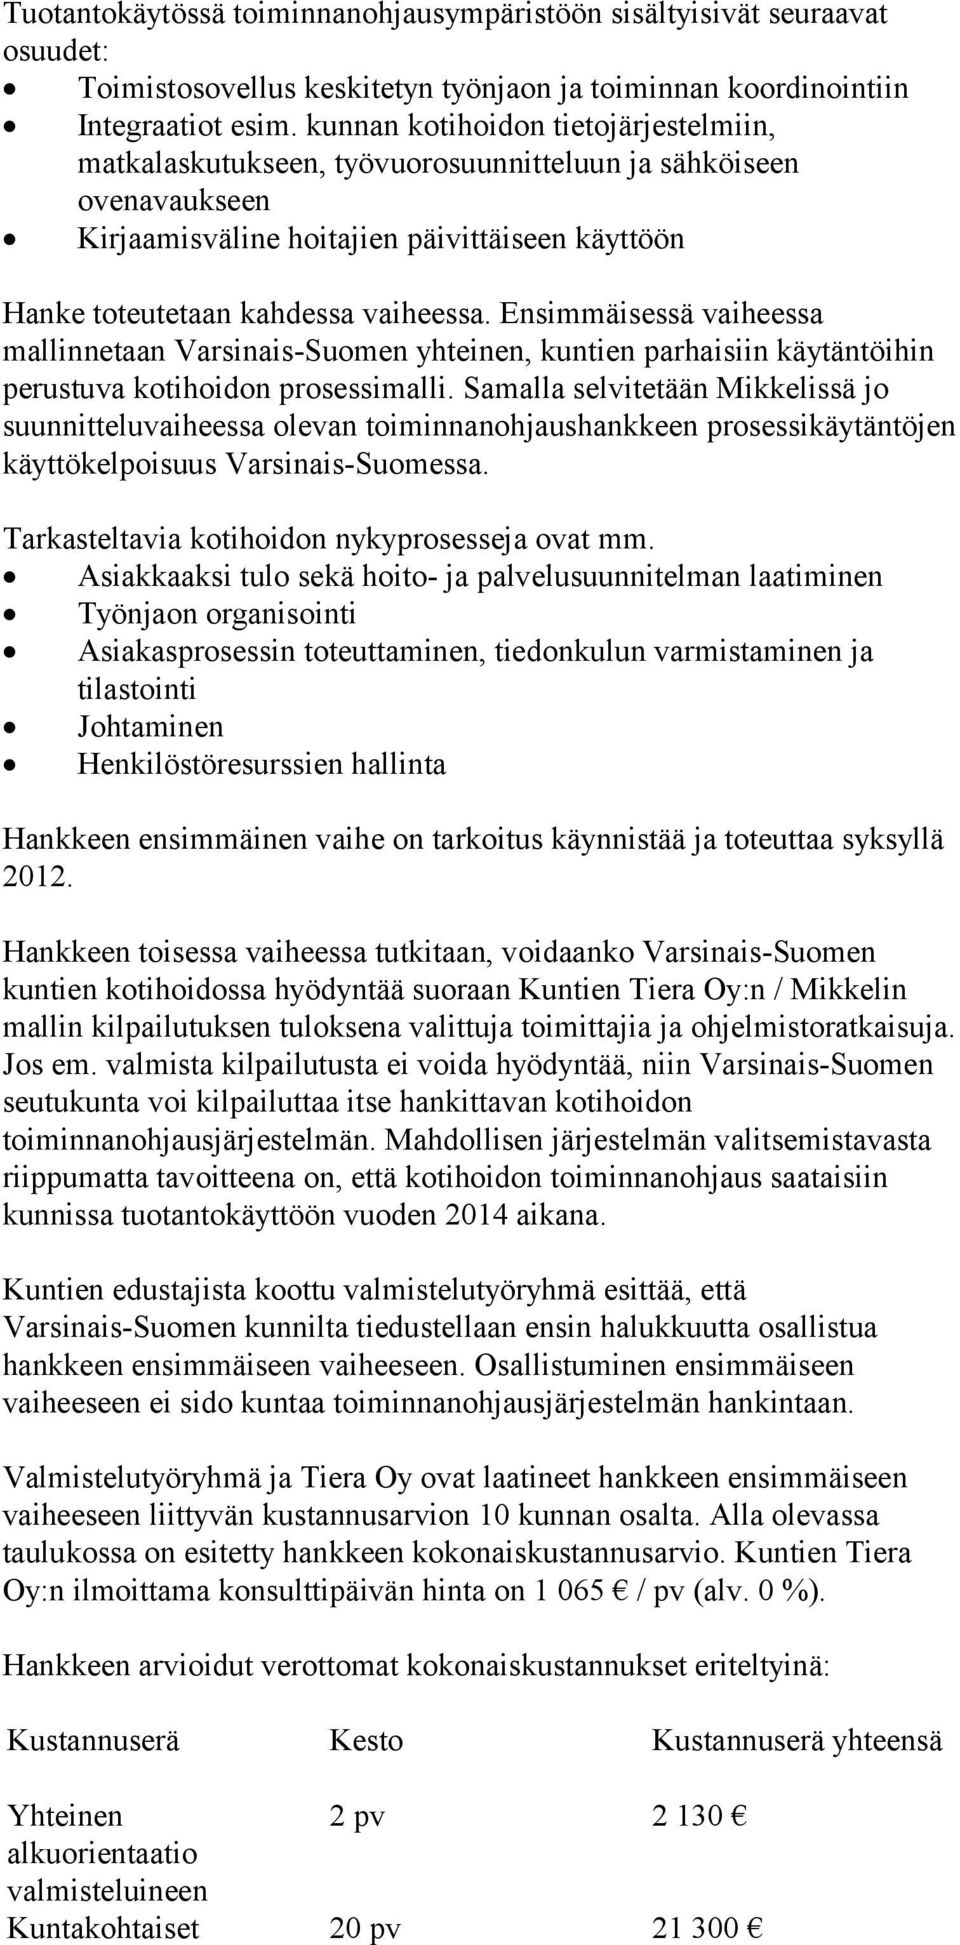 Ensimmäisessä vaiheessa mallinnetaan Varsinais-Suomen yhteinen, kuntien parhaisiin käytäntöihin perustuva kotihoidon prosessimalli.